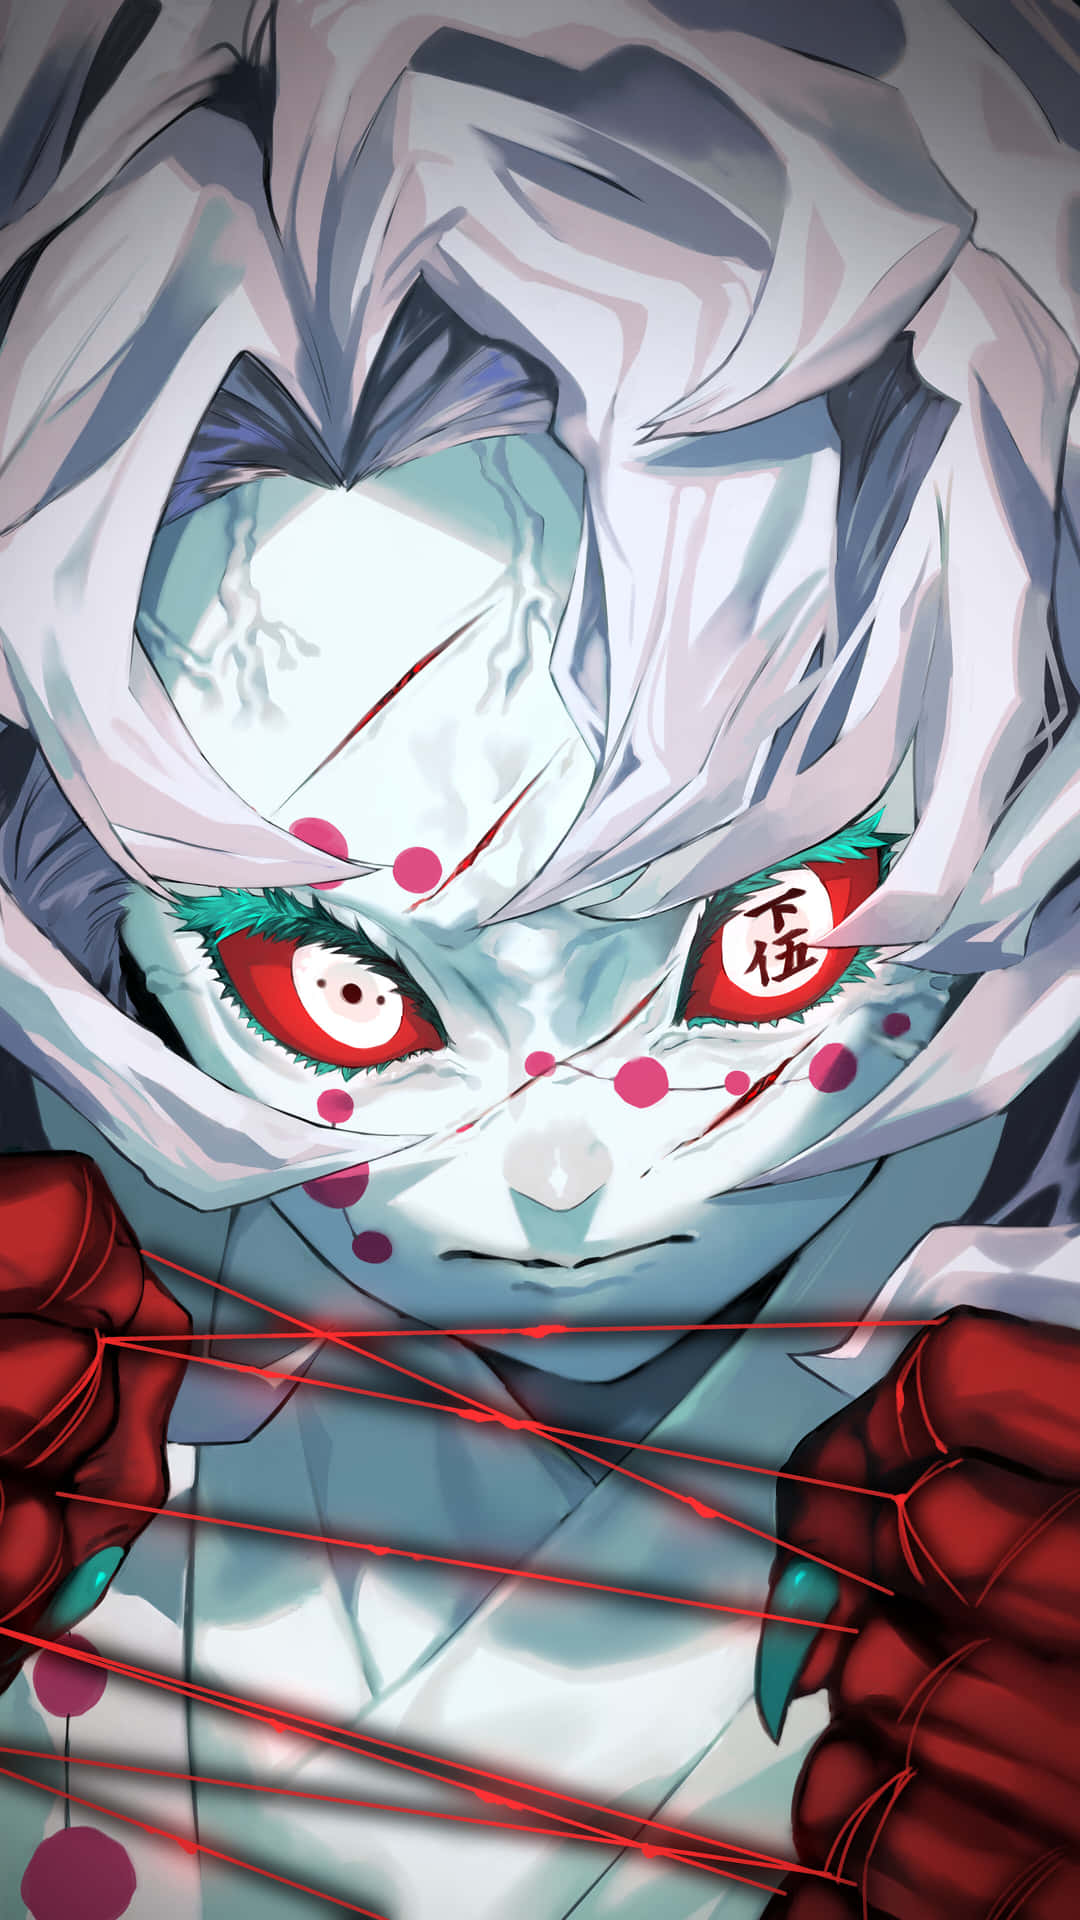 Umagarota De Anime Branca Com Olhos Vermelhos E Mãos Ensanguentadas Papel de Parede